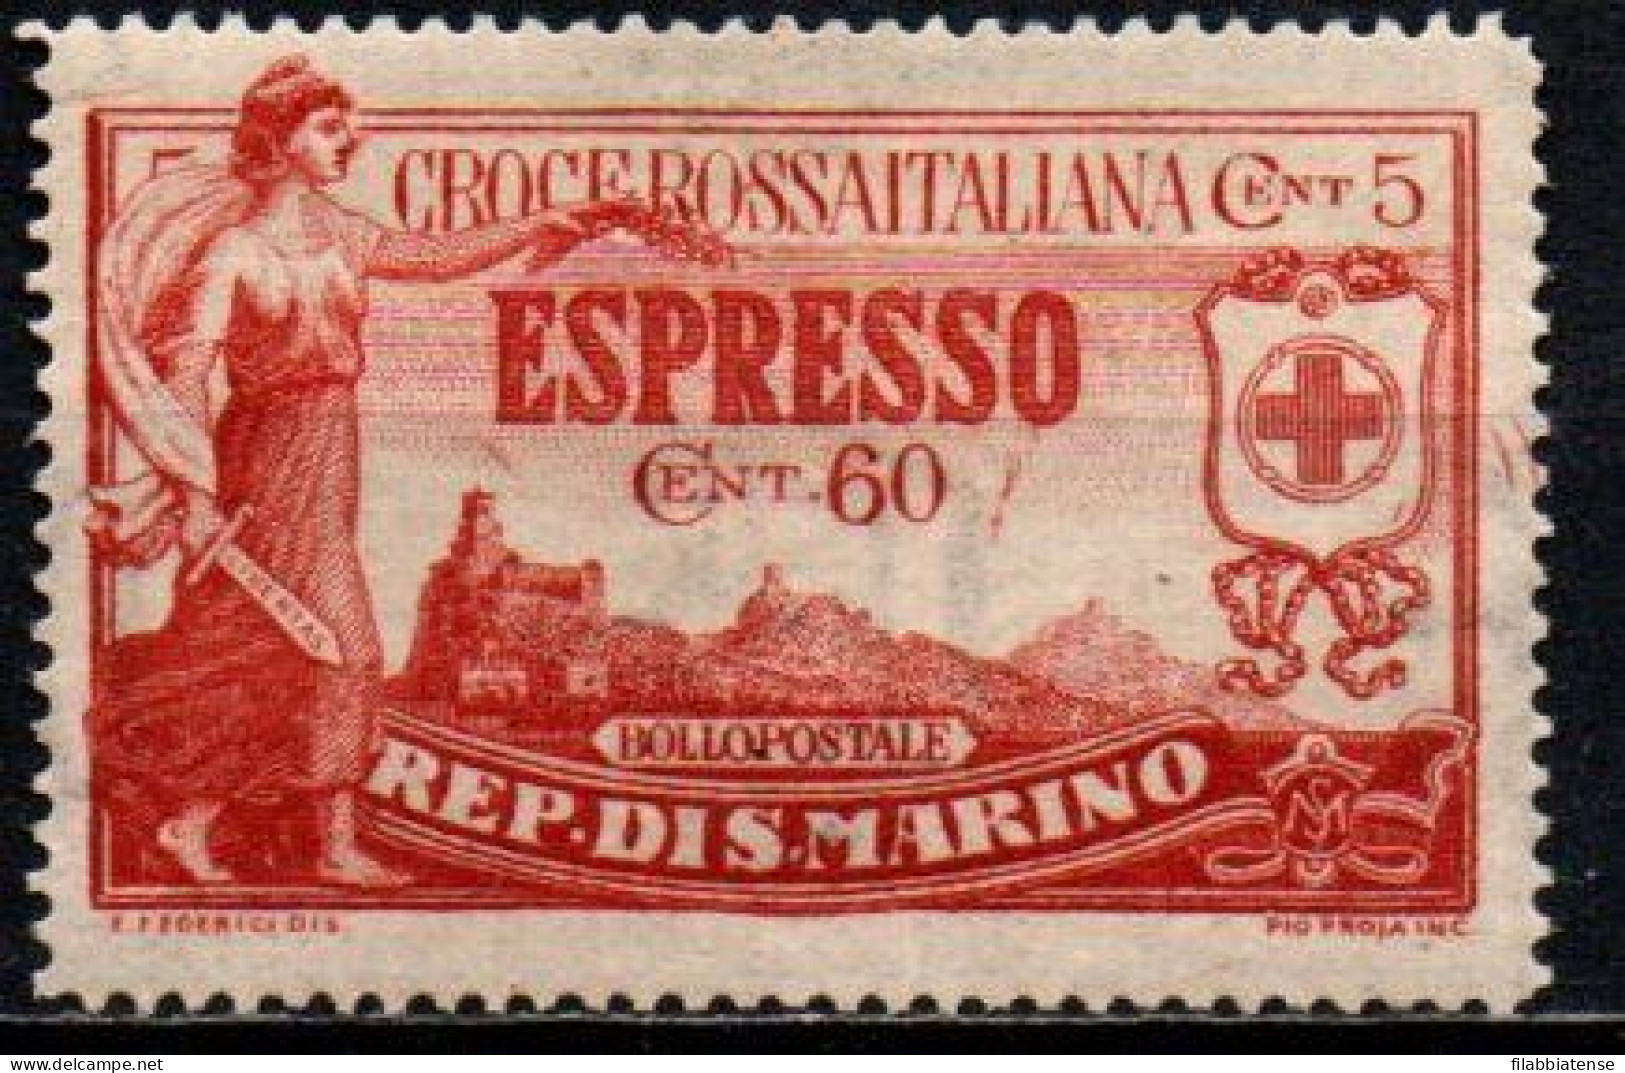 1923 - San Marino E 4 Croce Rossa ++++++ - Nuovi